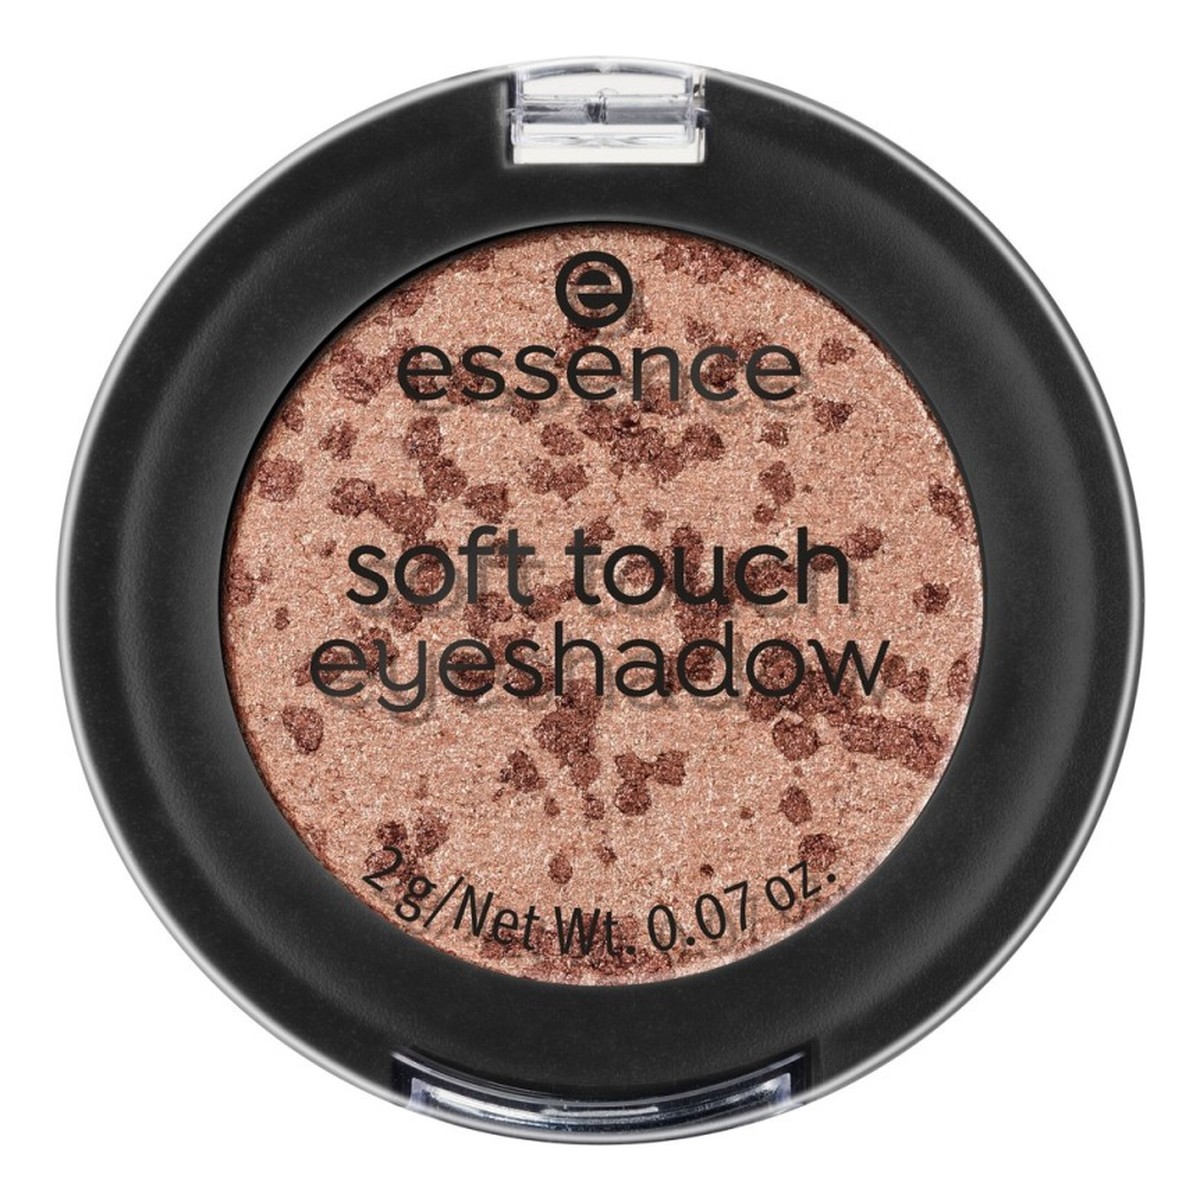 Essence Soft touch eyeshadow Cienie Do Powiek Cookie Jar (08) 2g